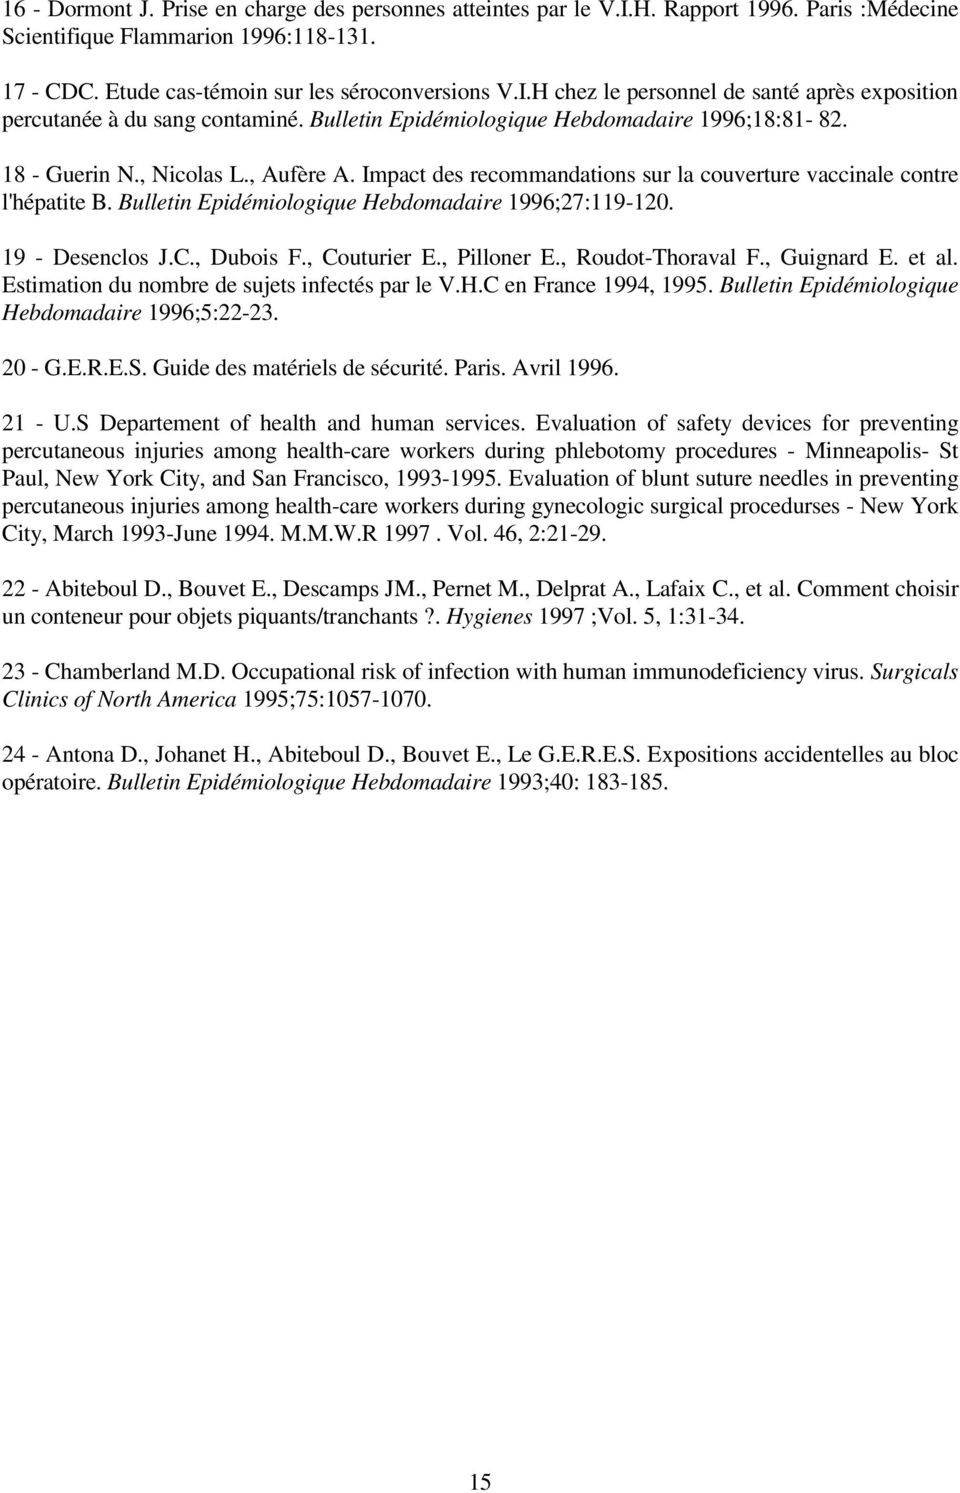 Bulletin Epidémiologique Hebdomadaire 1996;27:119-120. 19 - Desenclos J.C., Dubois F., Couturier E., Pilloner E., Roudot-Thoraval F., Guignard E. et al.